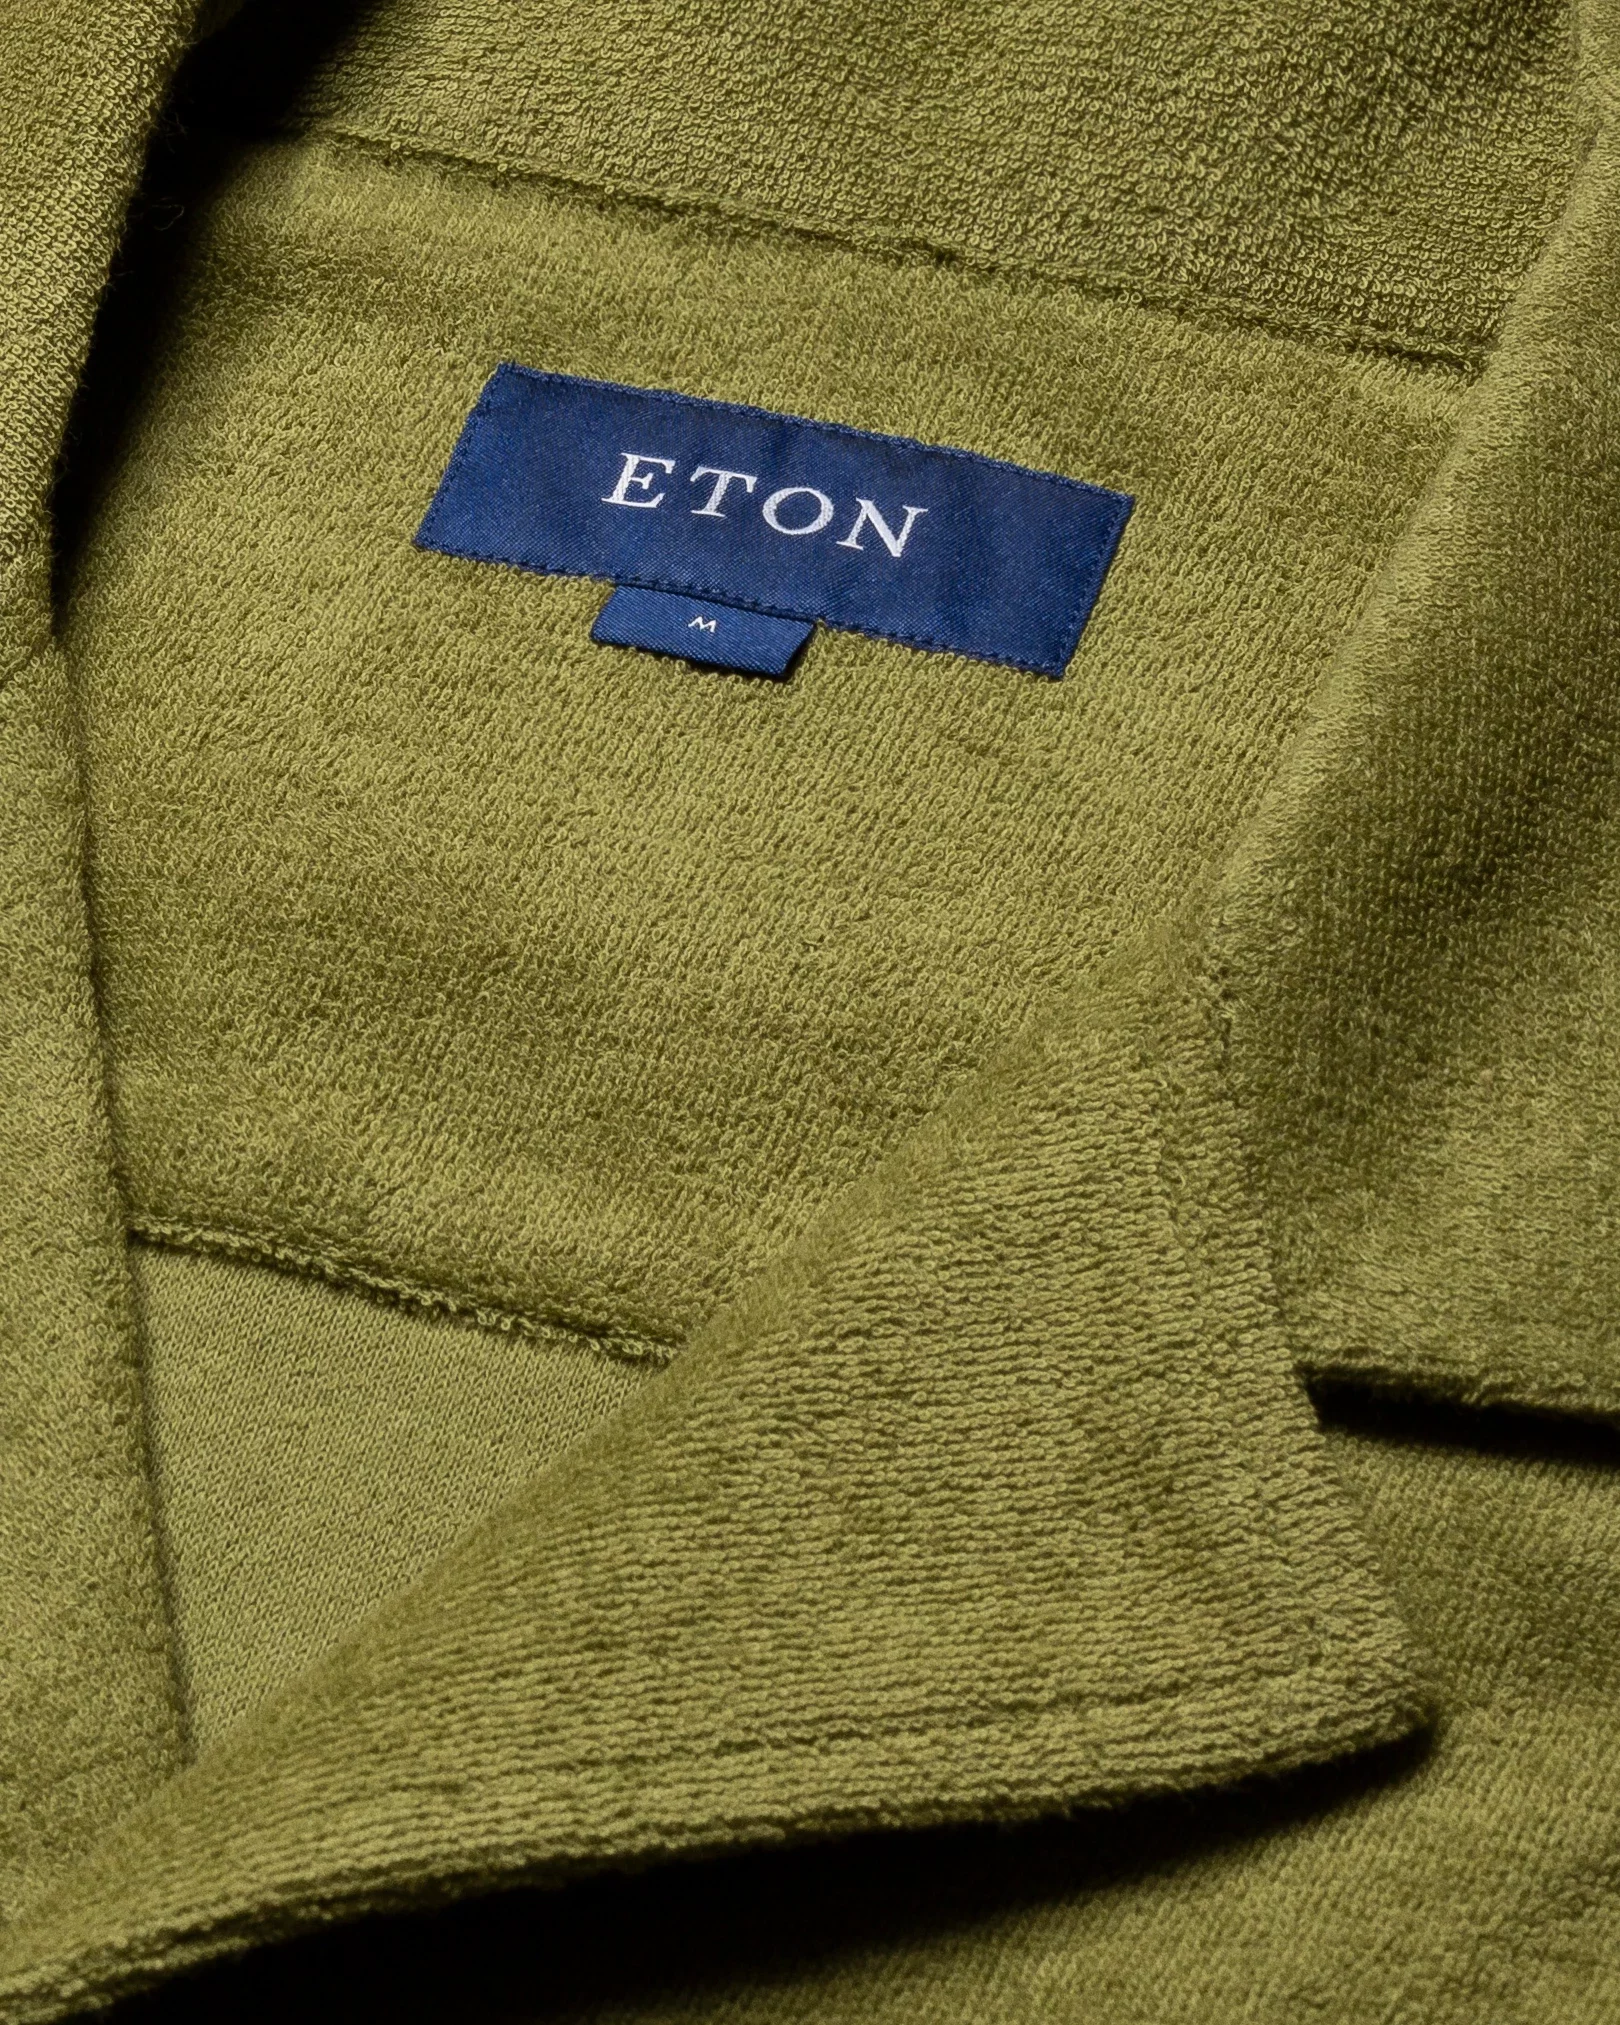 Eton - dark green jerseyterryfrotte turn down short terry terry